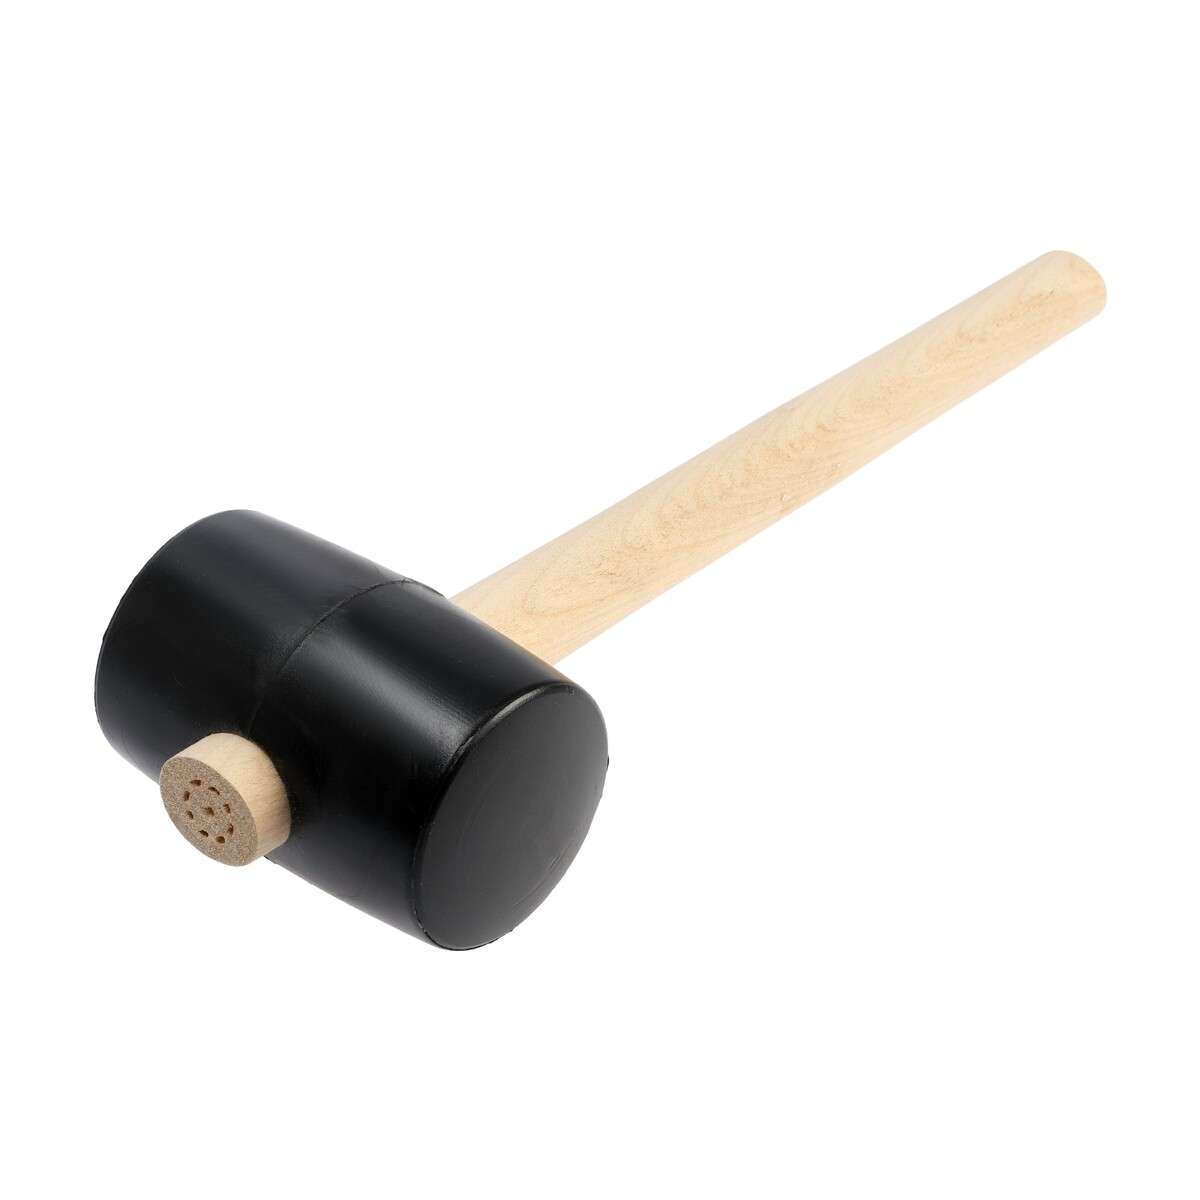 Киянка лом, деревянная рукоятка, черная резина, 65 мм, 500 г киянка тундра деревянная рукоятка черная резина 225 г